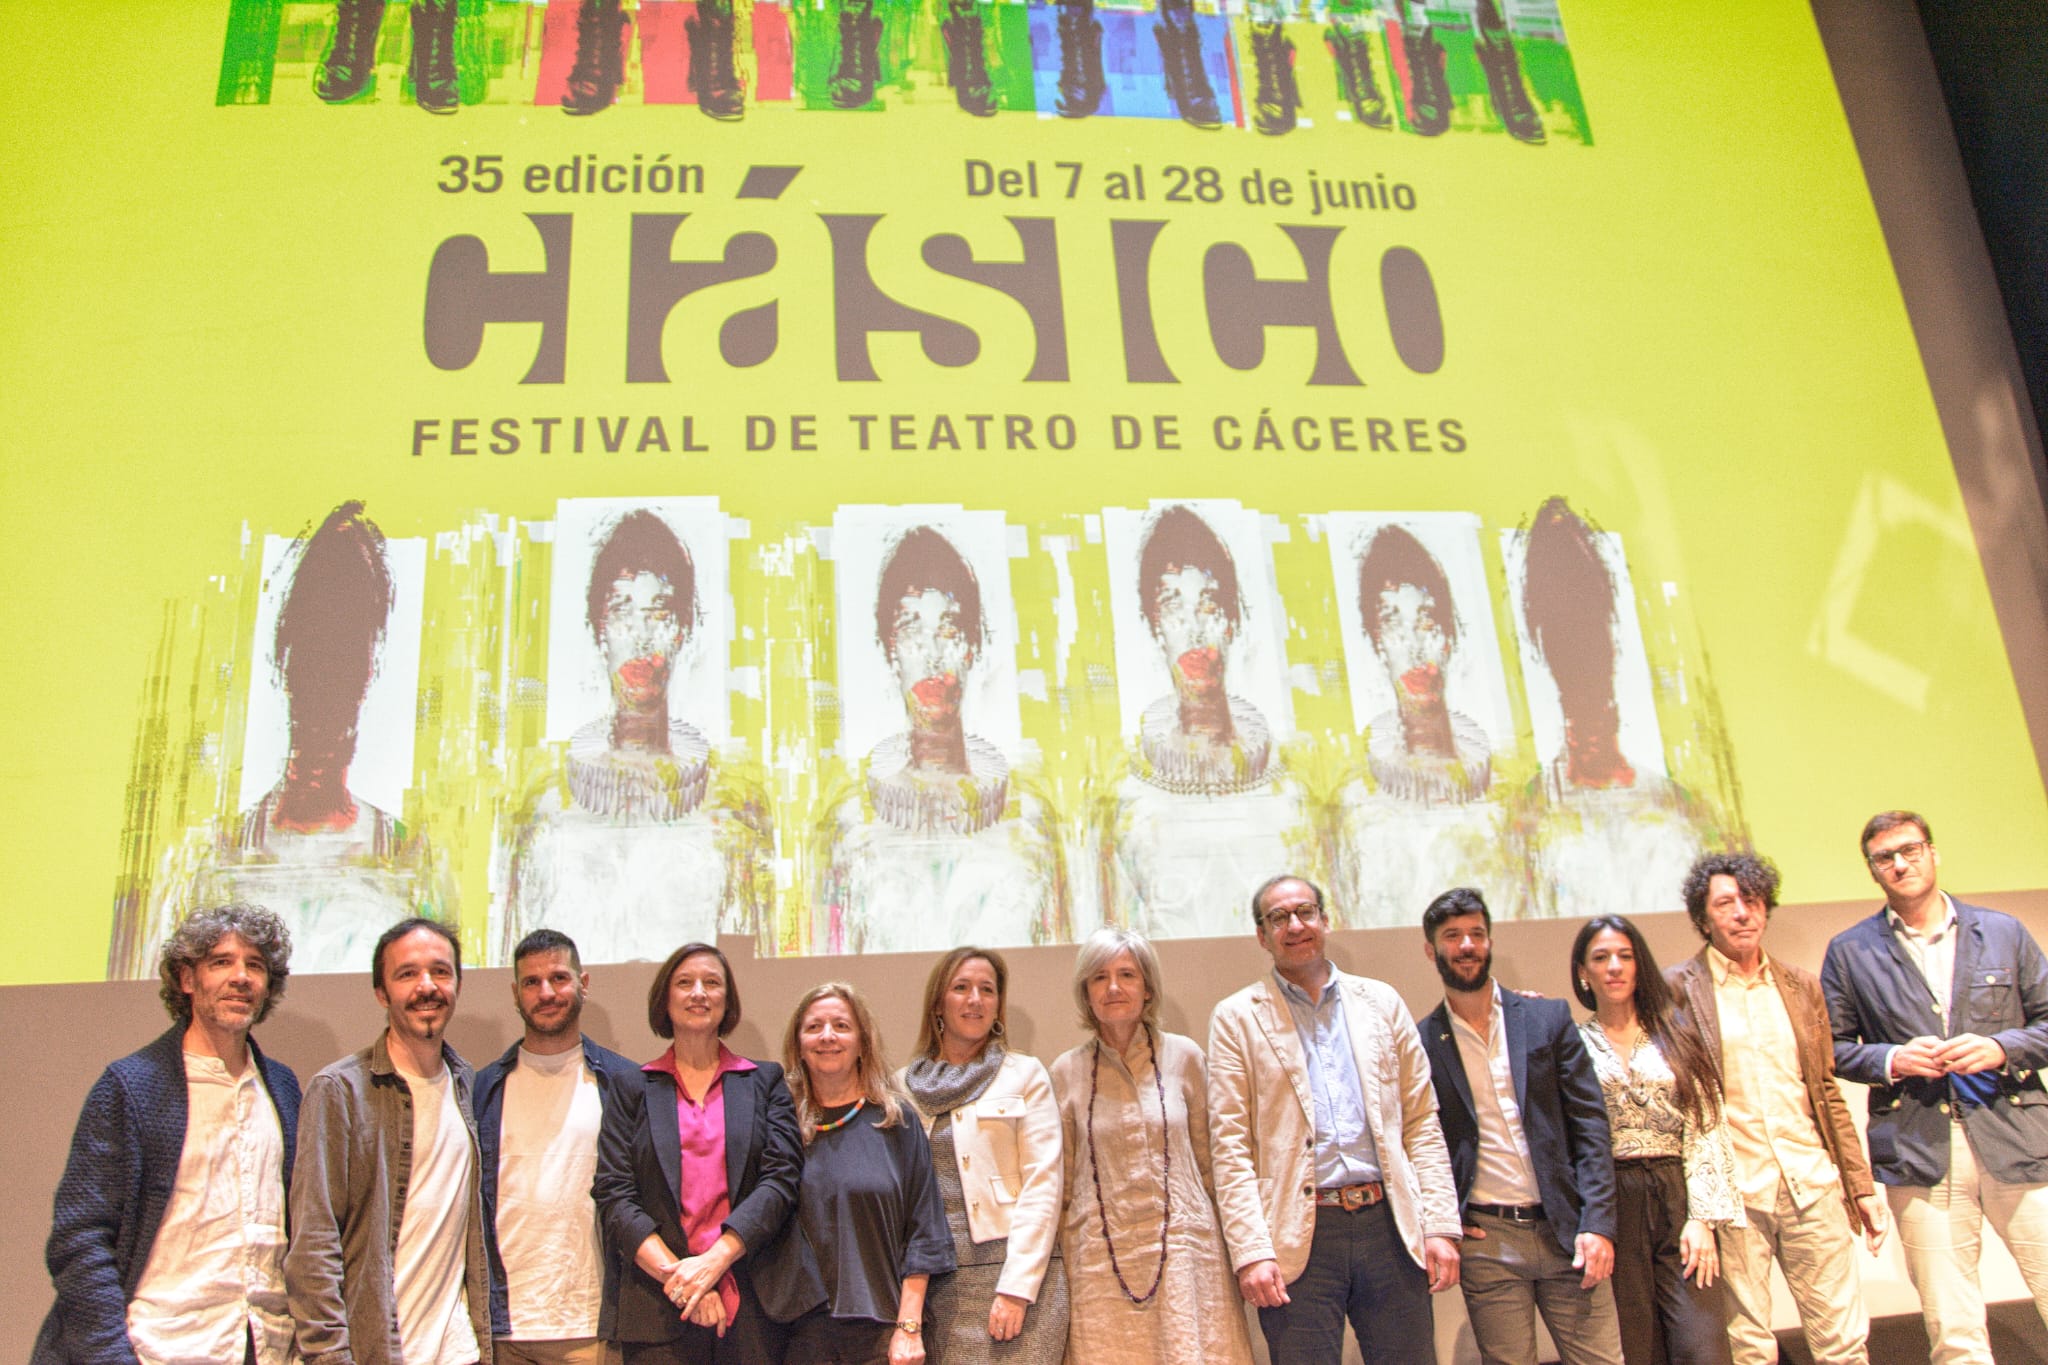 Image 6 of article La 35 edición del Festival de Teatro Clásico de Cáceres entregará por primera vez unos premios en una gala benéfica